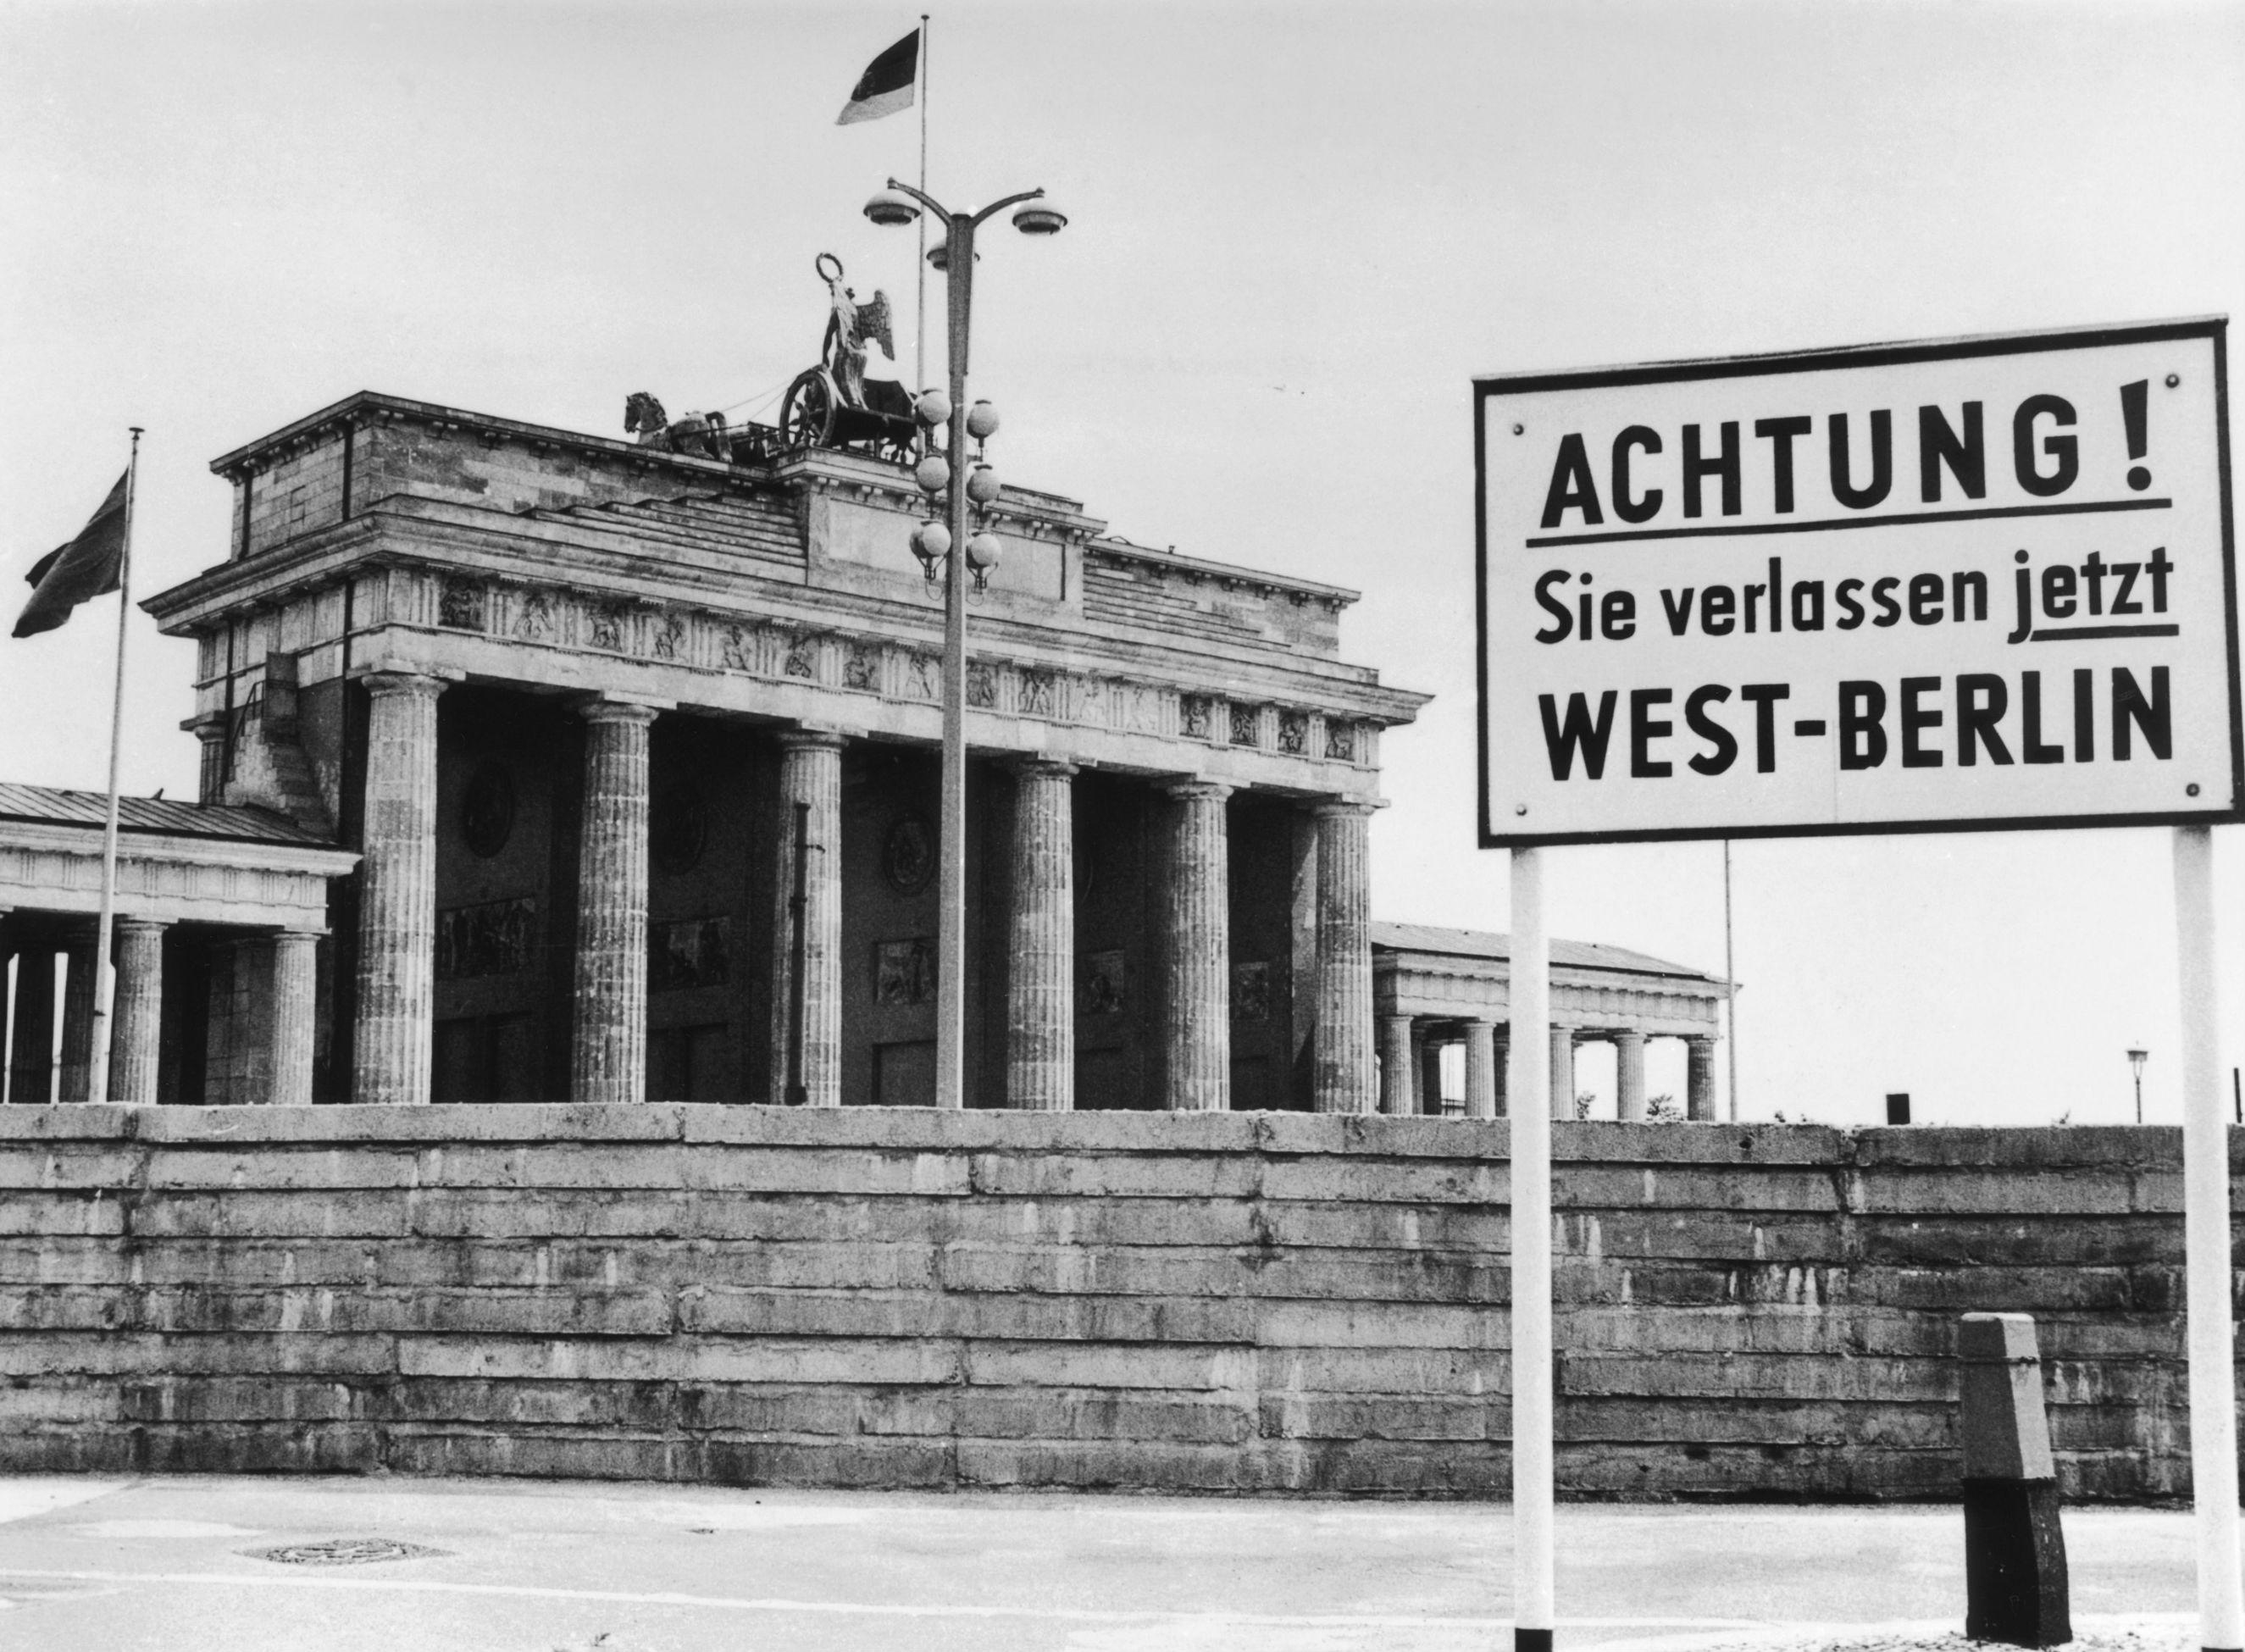 两百年之风雨,德意志兴衰见证之国门——勃兰登堡门